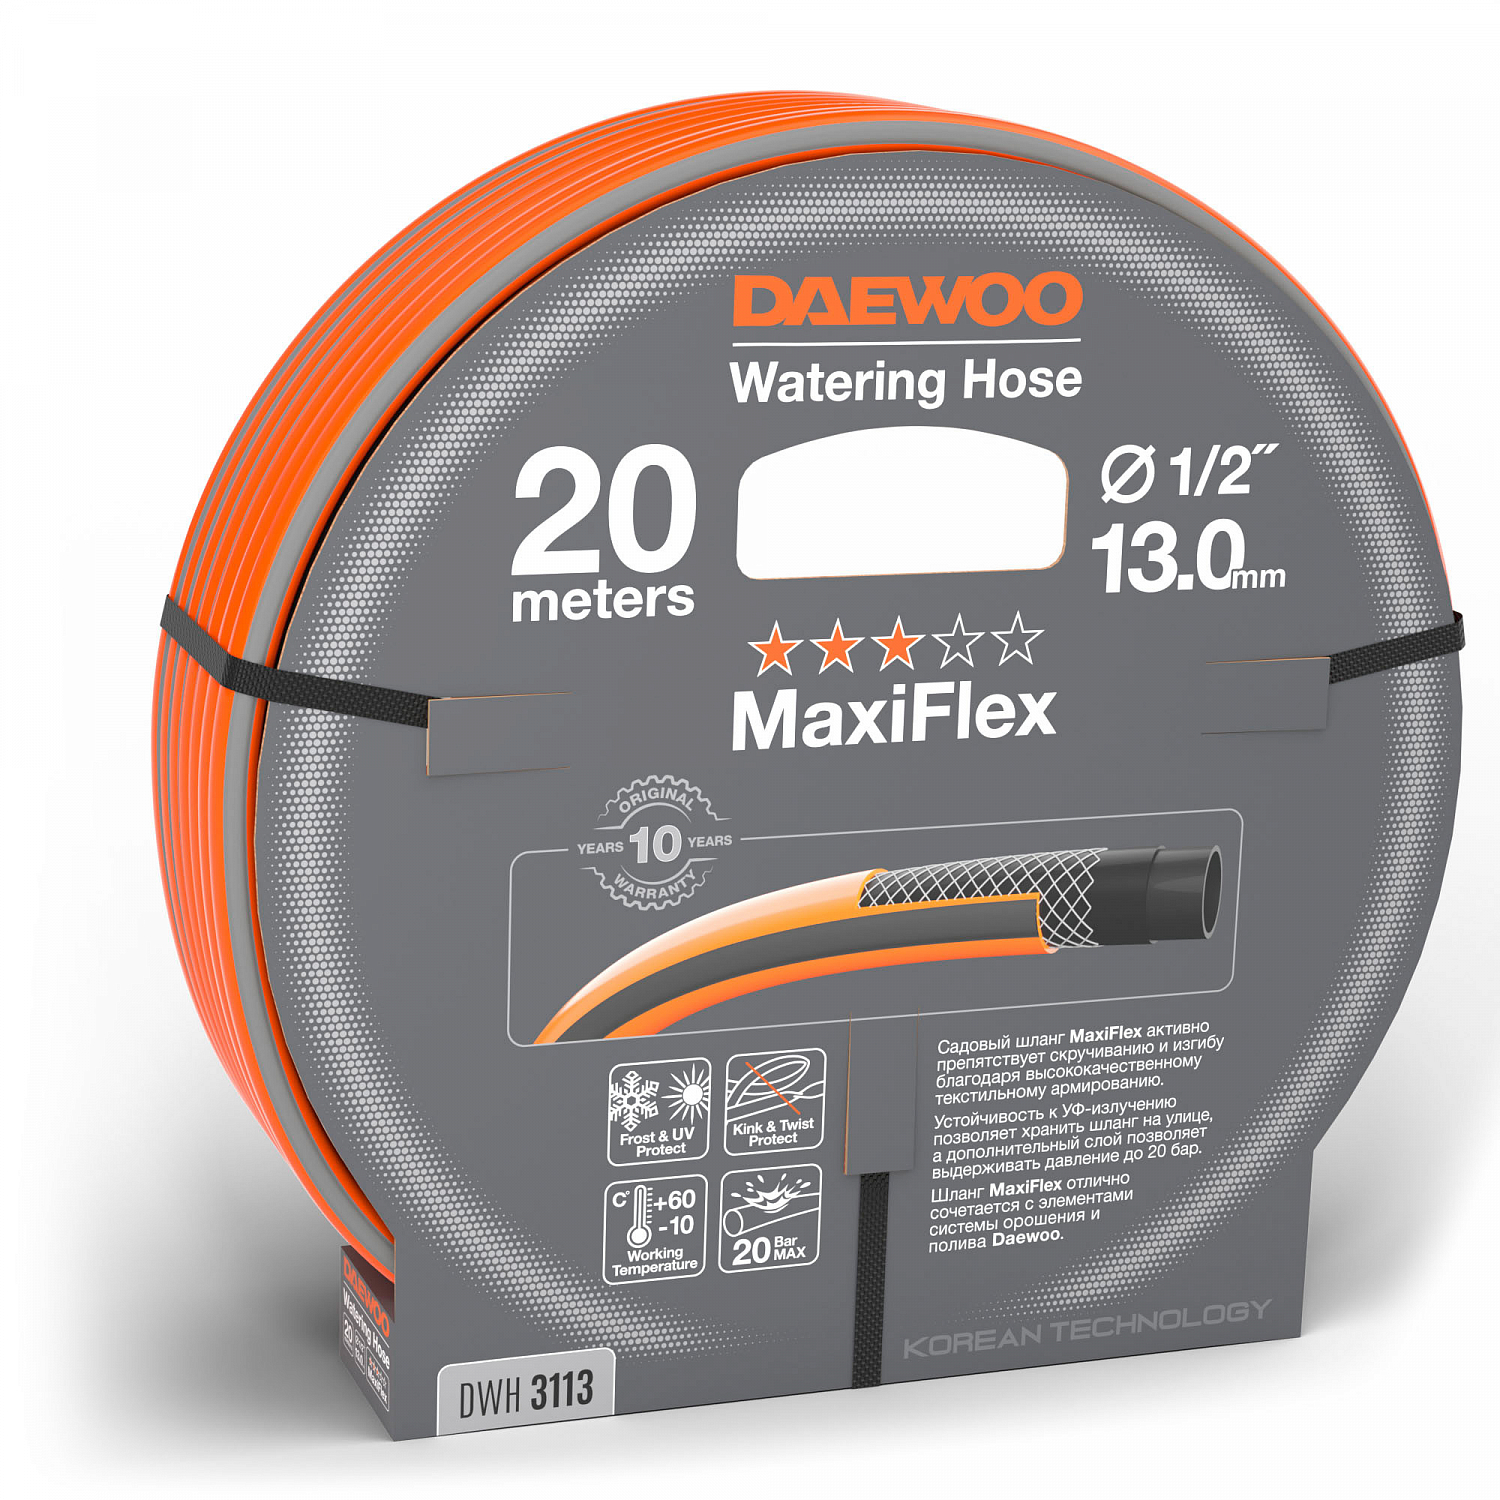 Шланг DAEWOO MaxiFlex 1/2 (13мм), 20м шланг gardena basic 13мм 1 2 20м 18123 29 000 00